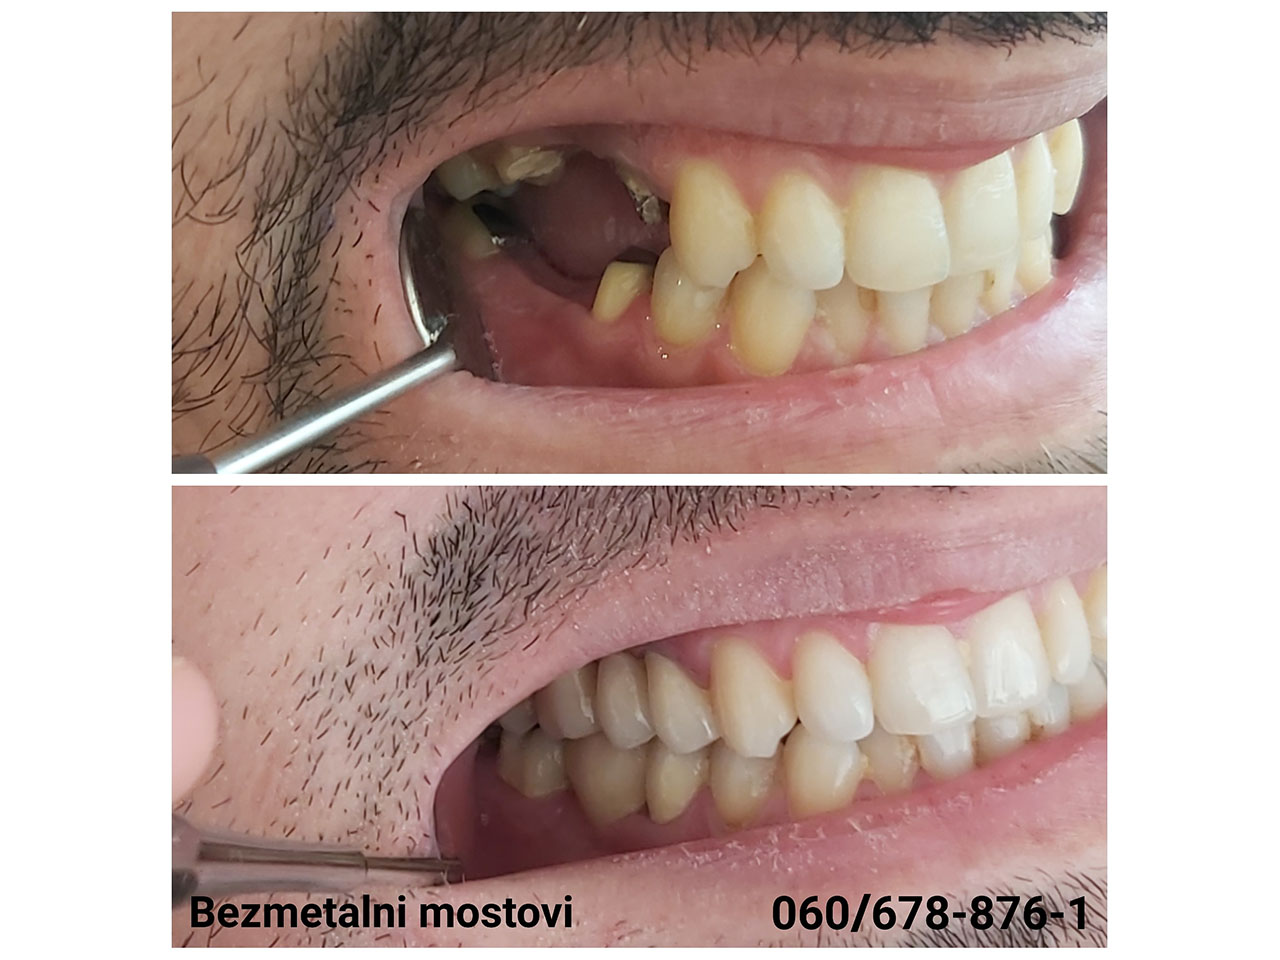 DENTAL MILOSEVIC Dental surgery Beograd